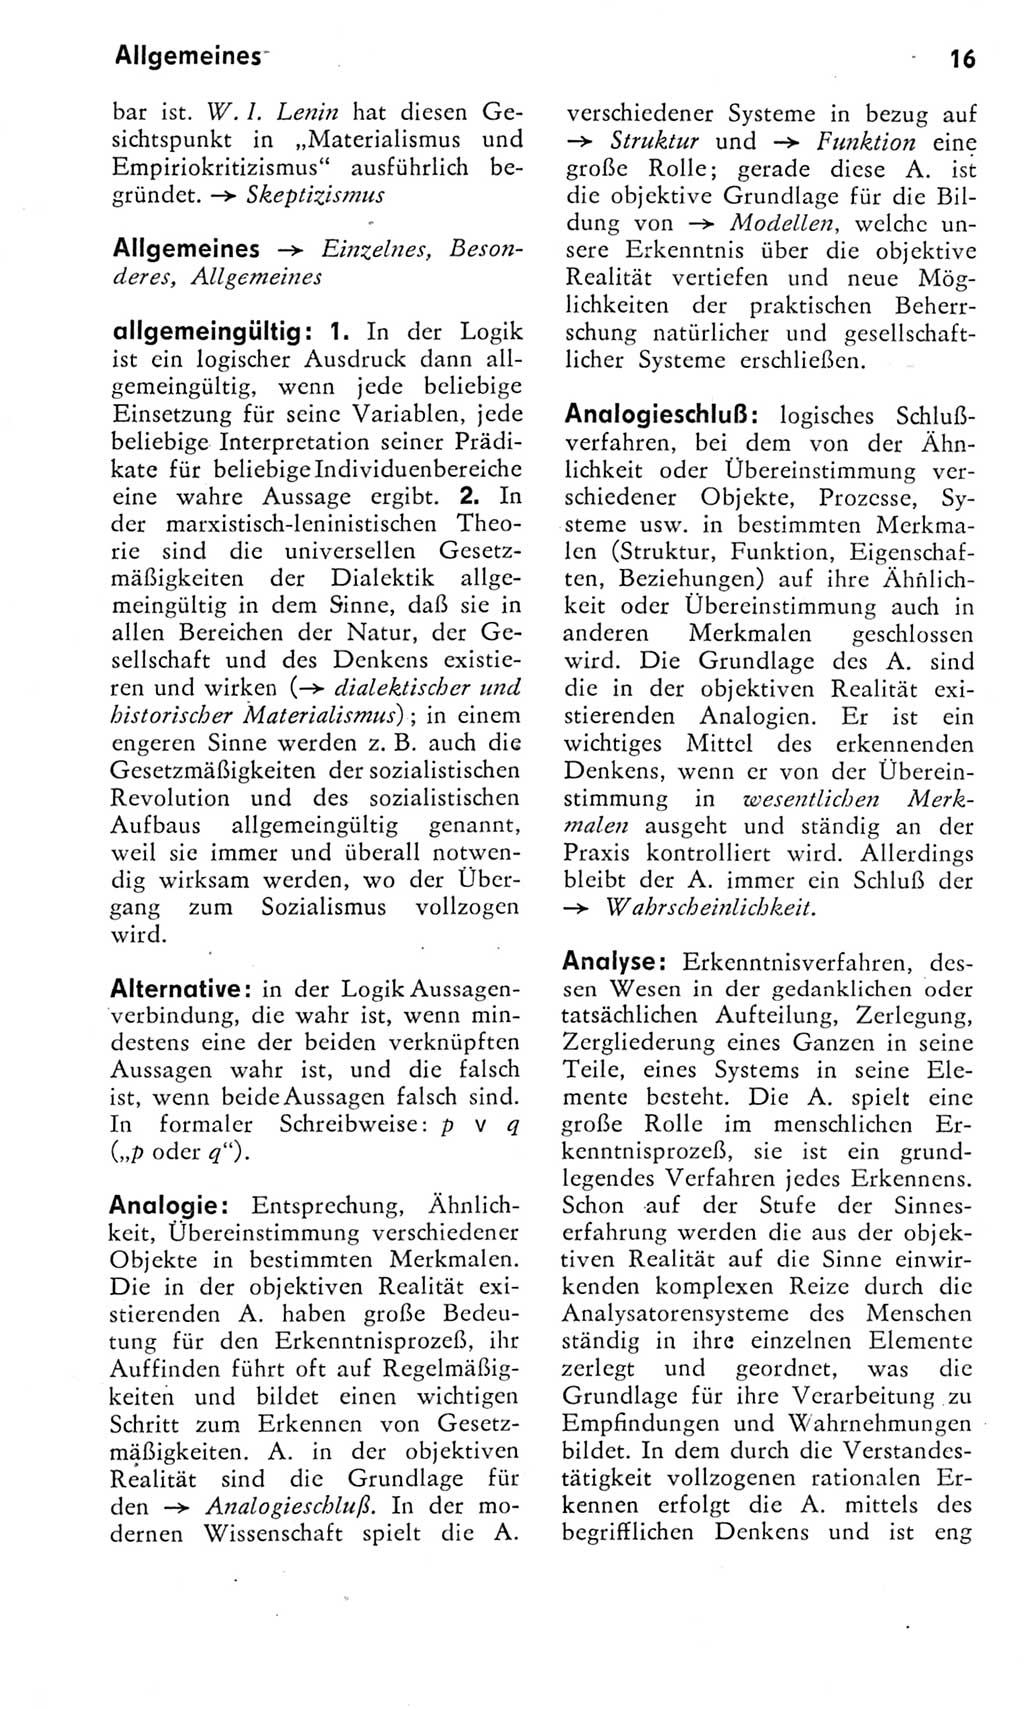 Kleines Wörterbuch der marxistisch-leninistischen Philosophie [Deutsche Demokratische Republik (DDR)] 1975, Seite 16 (Kl. Wb. ML Phil. DDR 1975, S. 16)